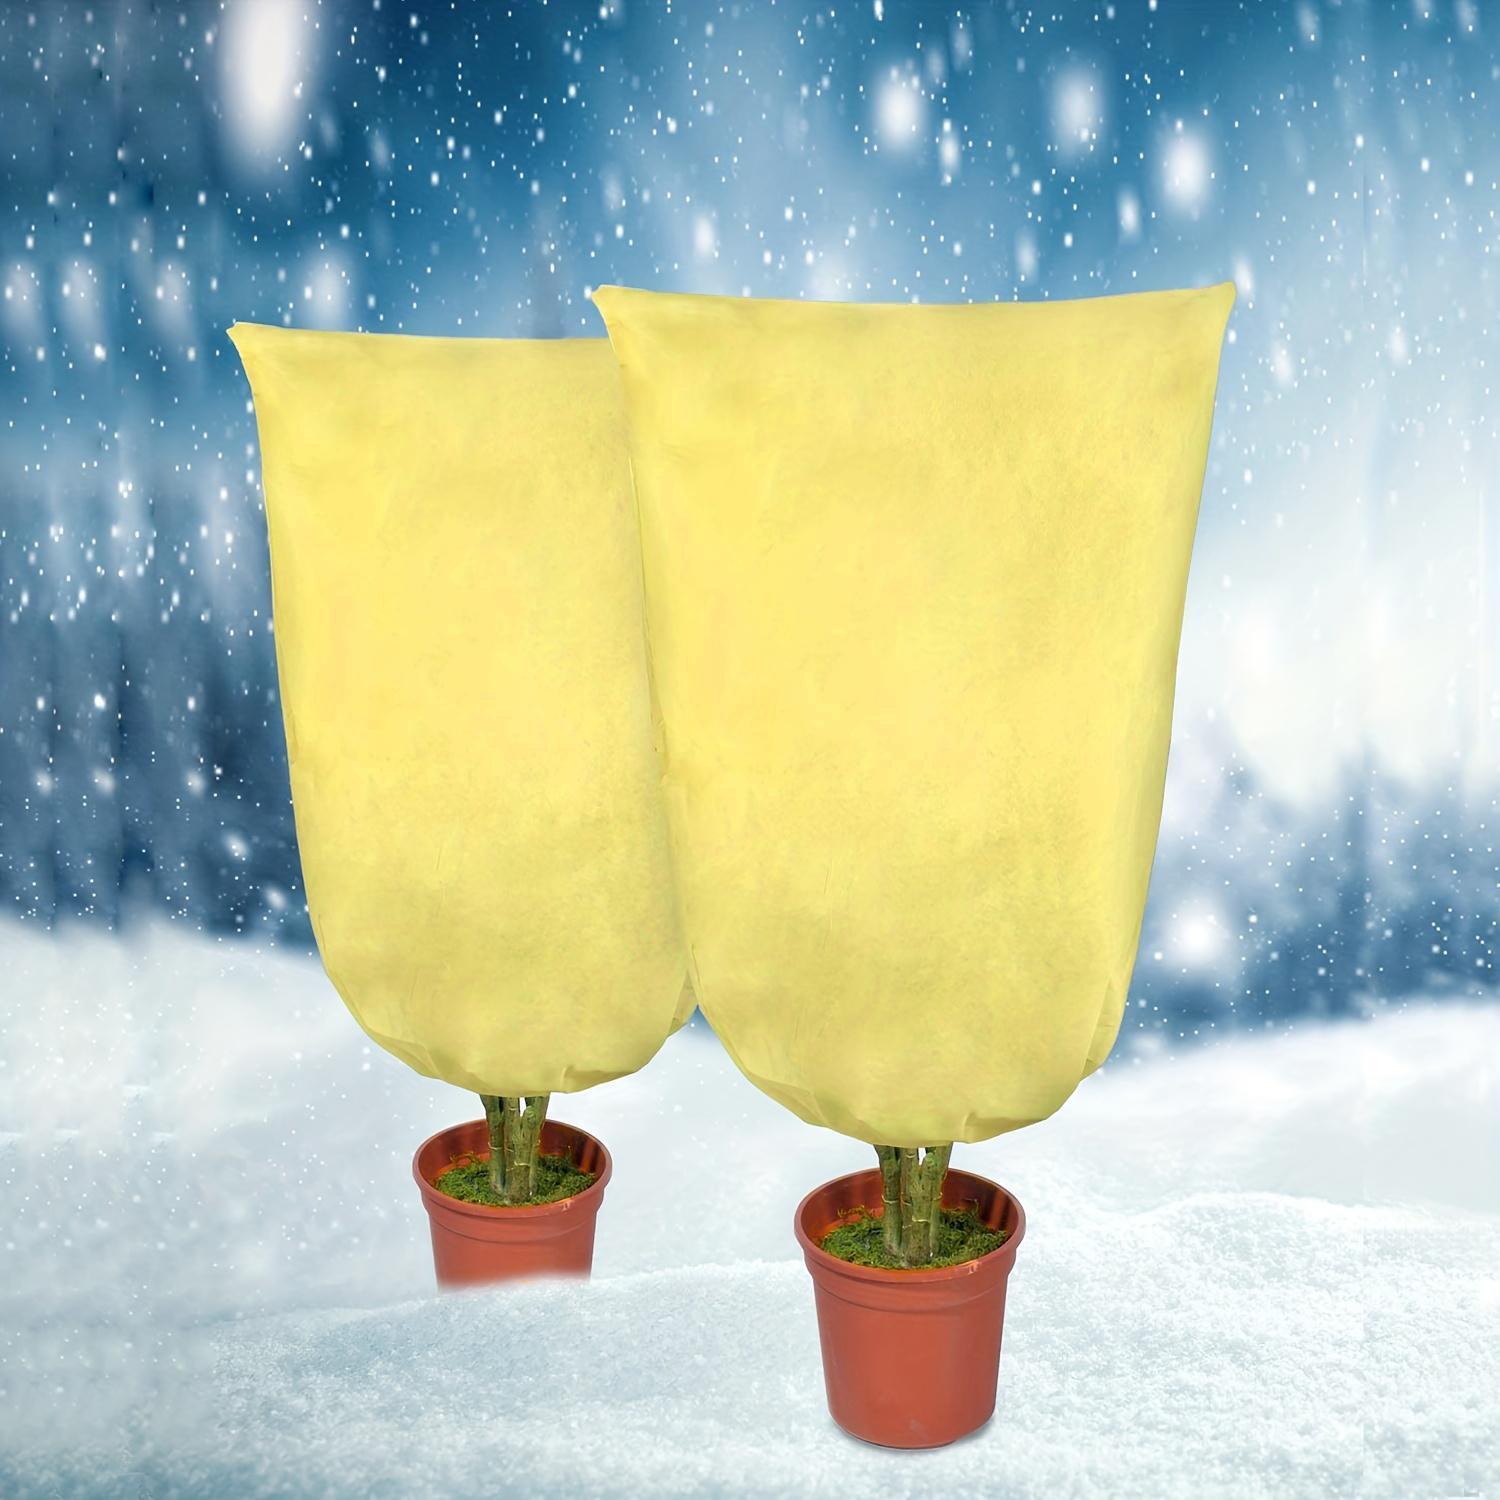 Housse de protection pour plantes contre le froid, couverture